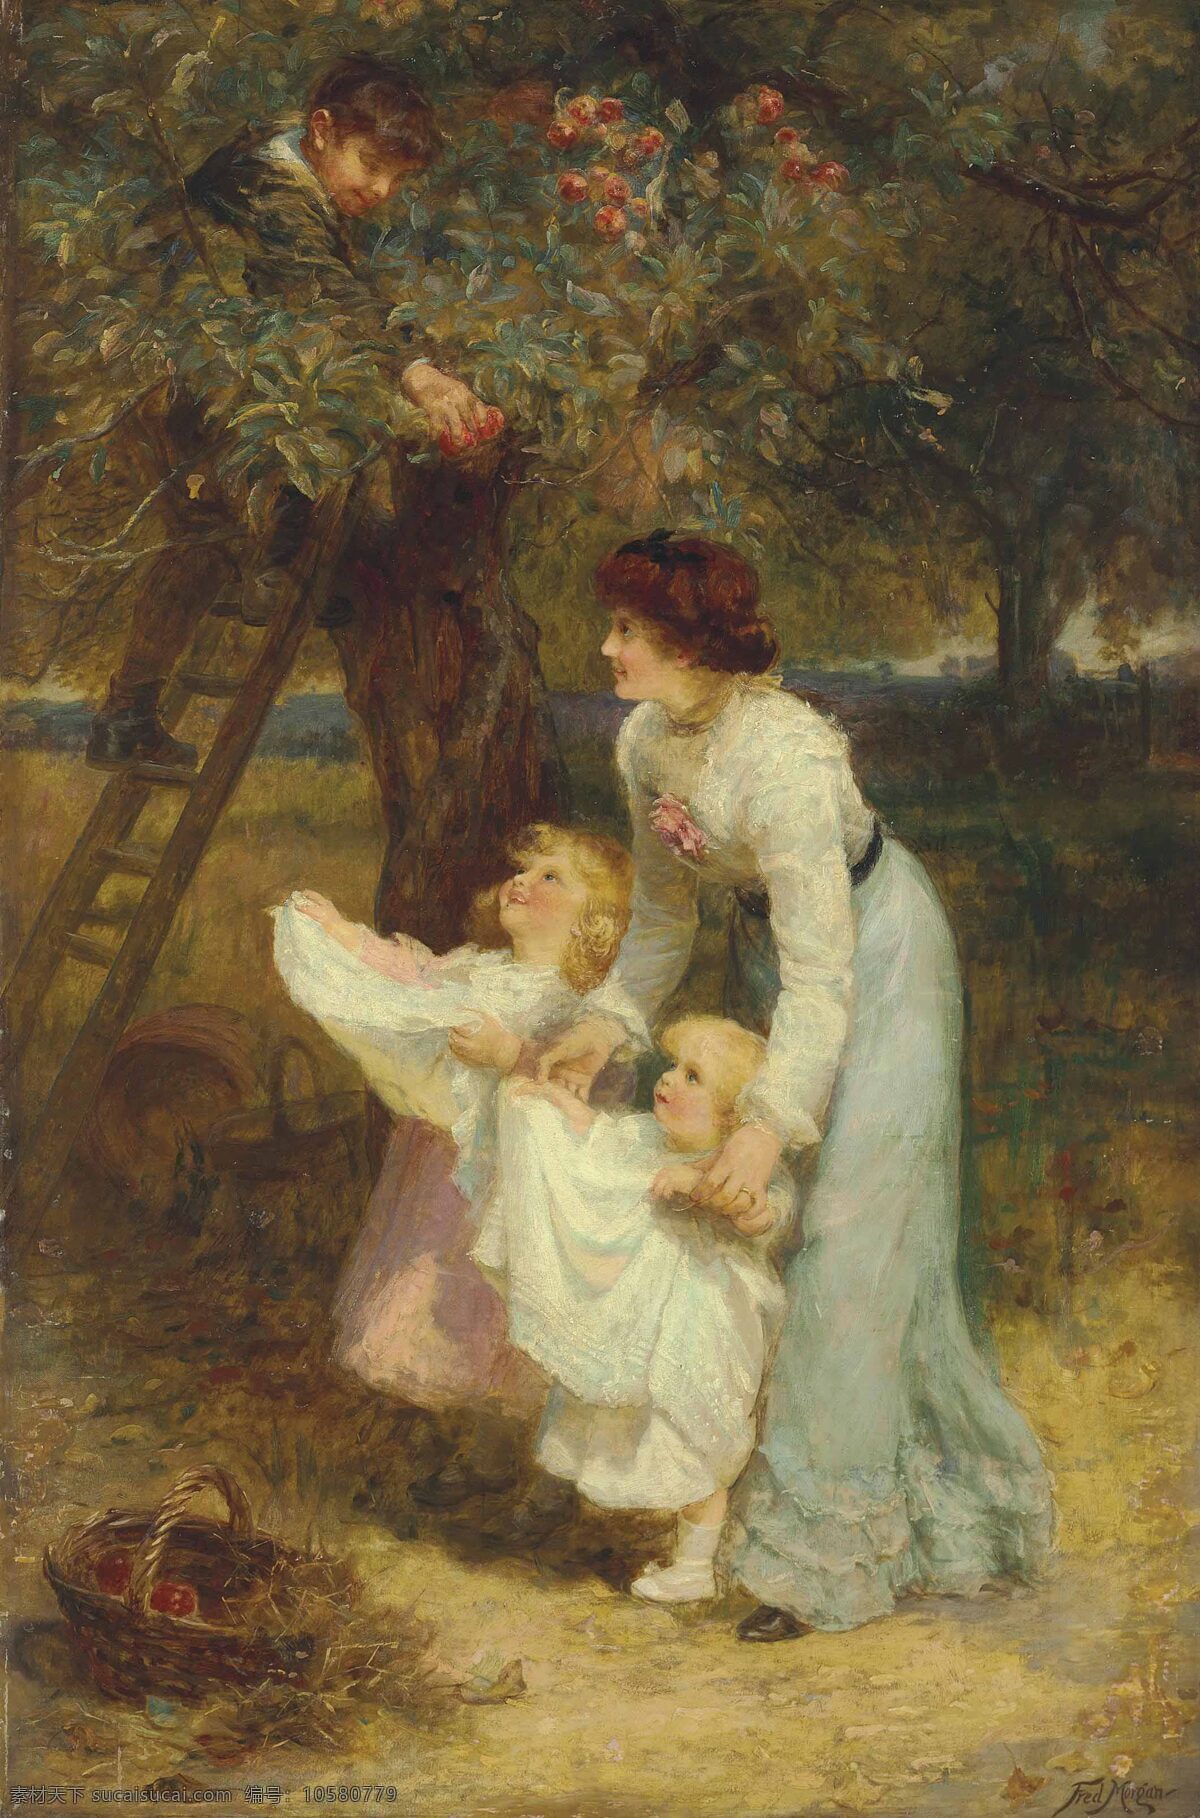 弗雷德里克 摩根 作品 英国画家 摘苹果时间 两个小姑娘 提出围裙 树上男孩 妇女 19世纪油画 油画 文化艺术 绘画书法